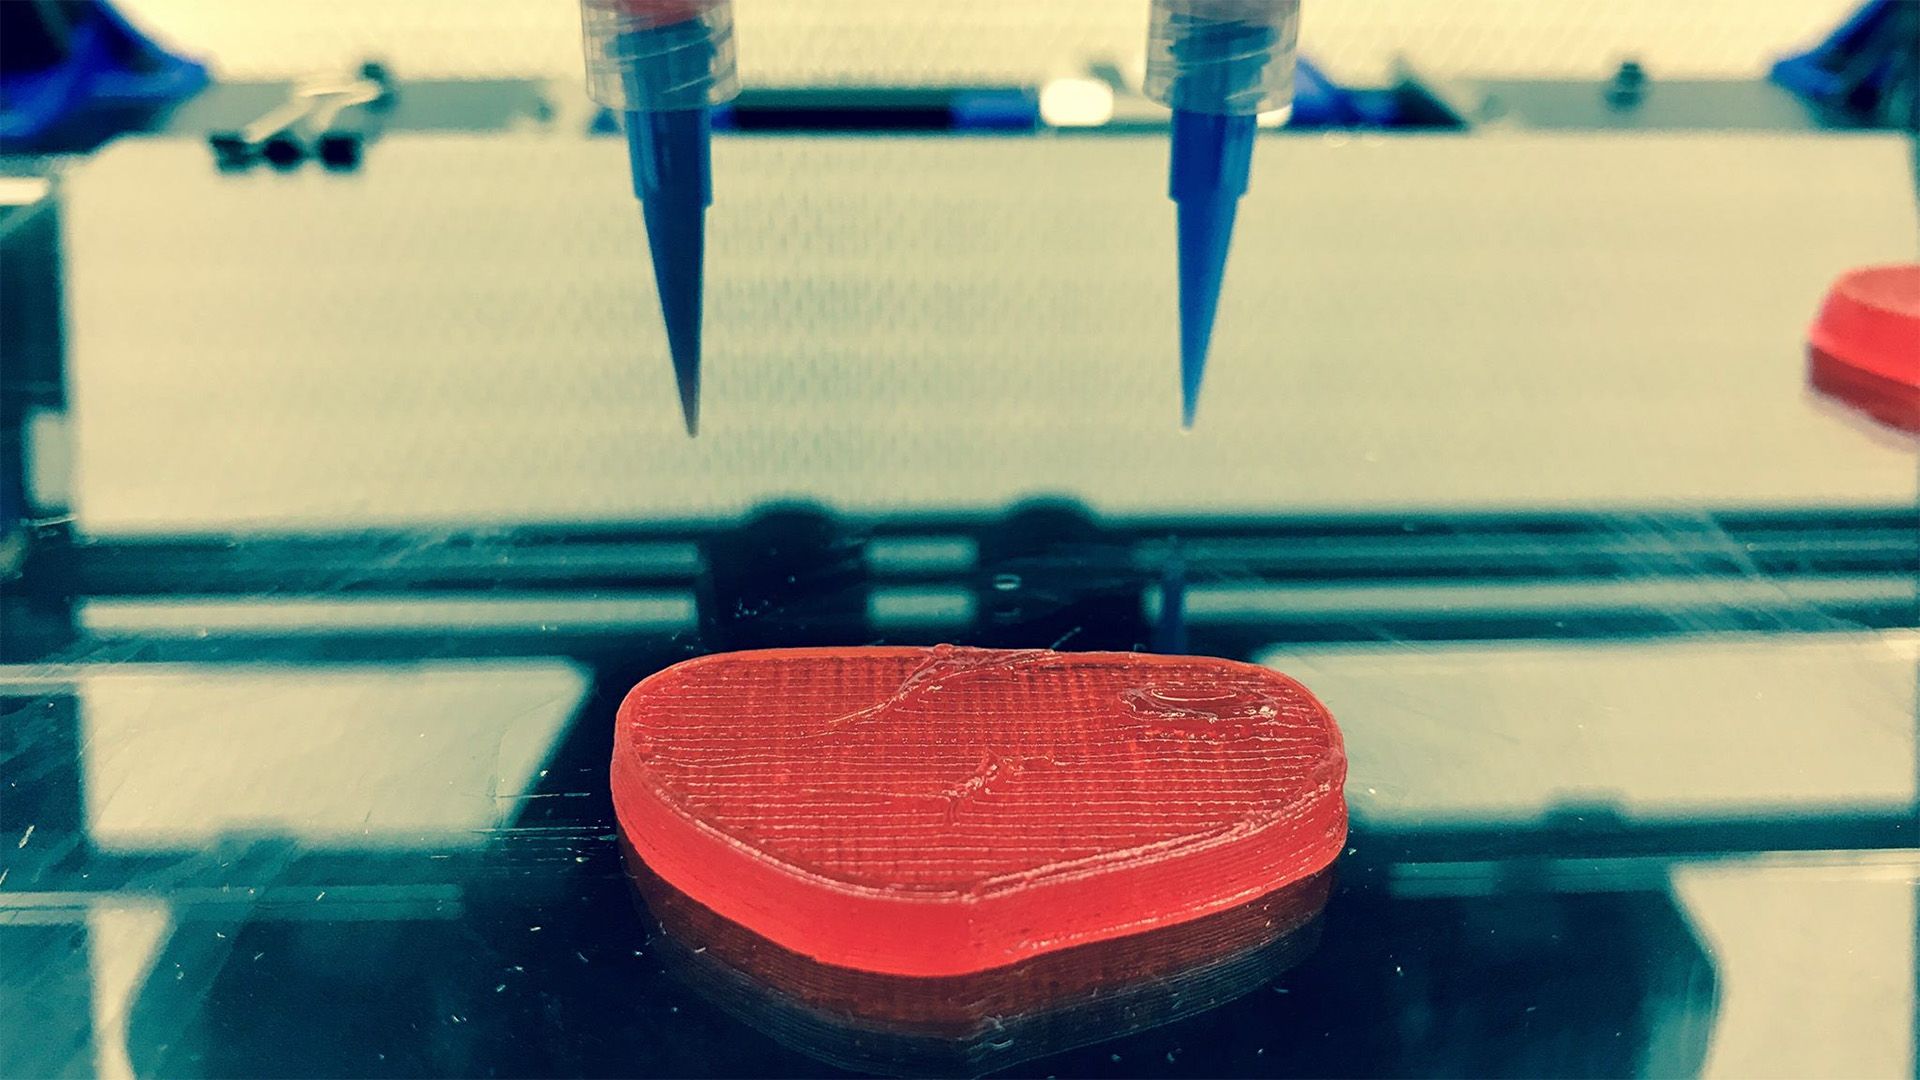 A Novameat különleges 3D-nyomtatókkal hozza létre a növényi alapú hússzeleteket